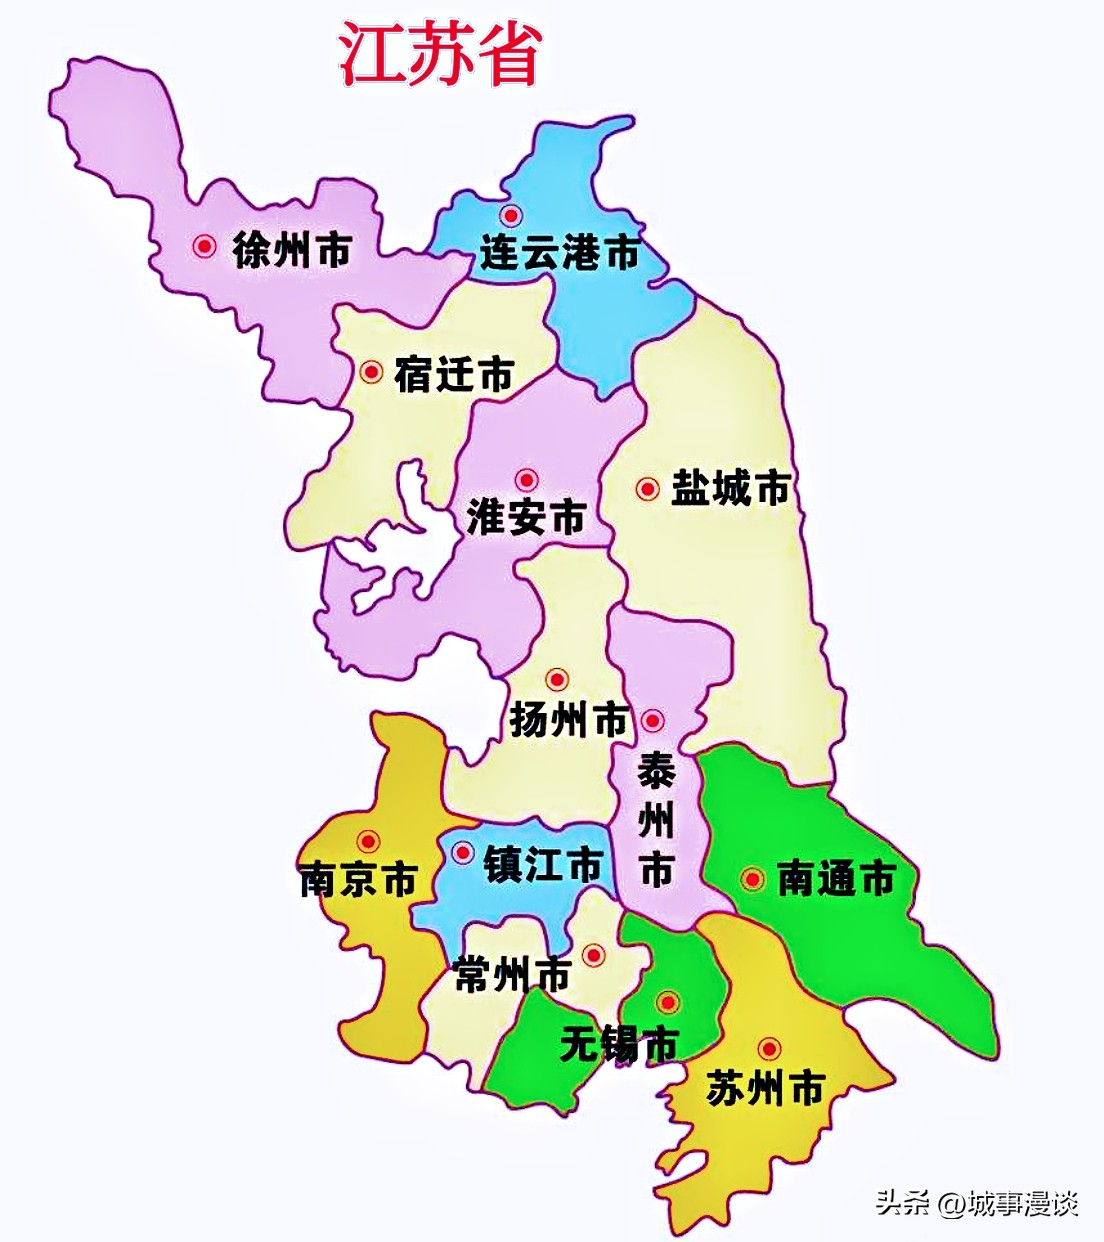 广东PK江苏，广东发展失衡，江苏头部城市实力有待提升